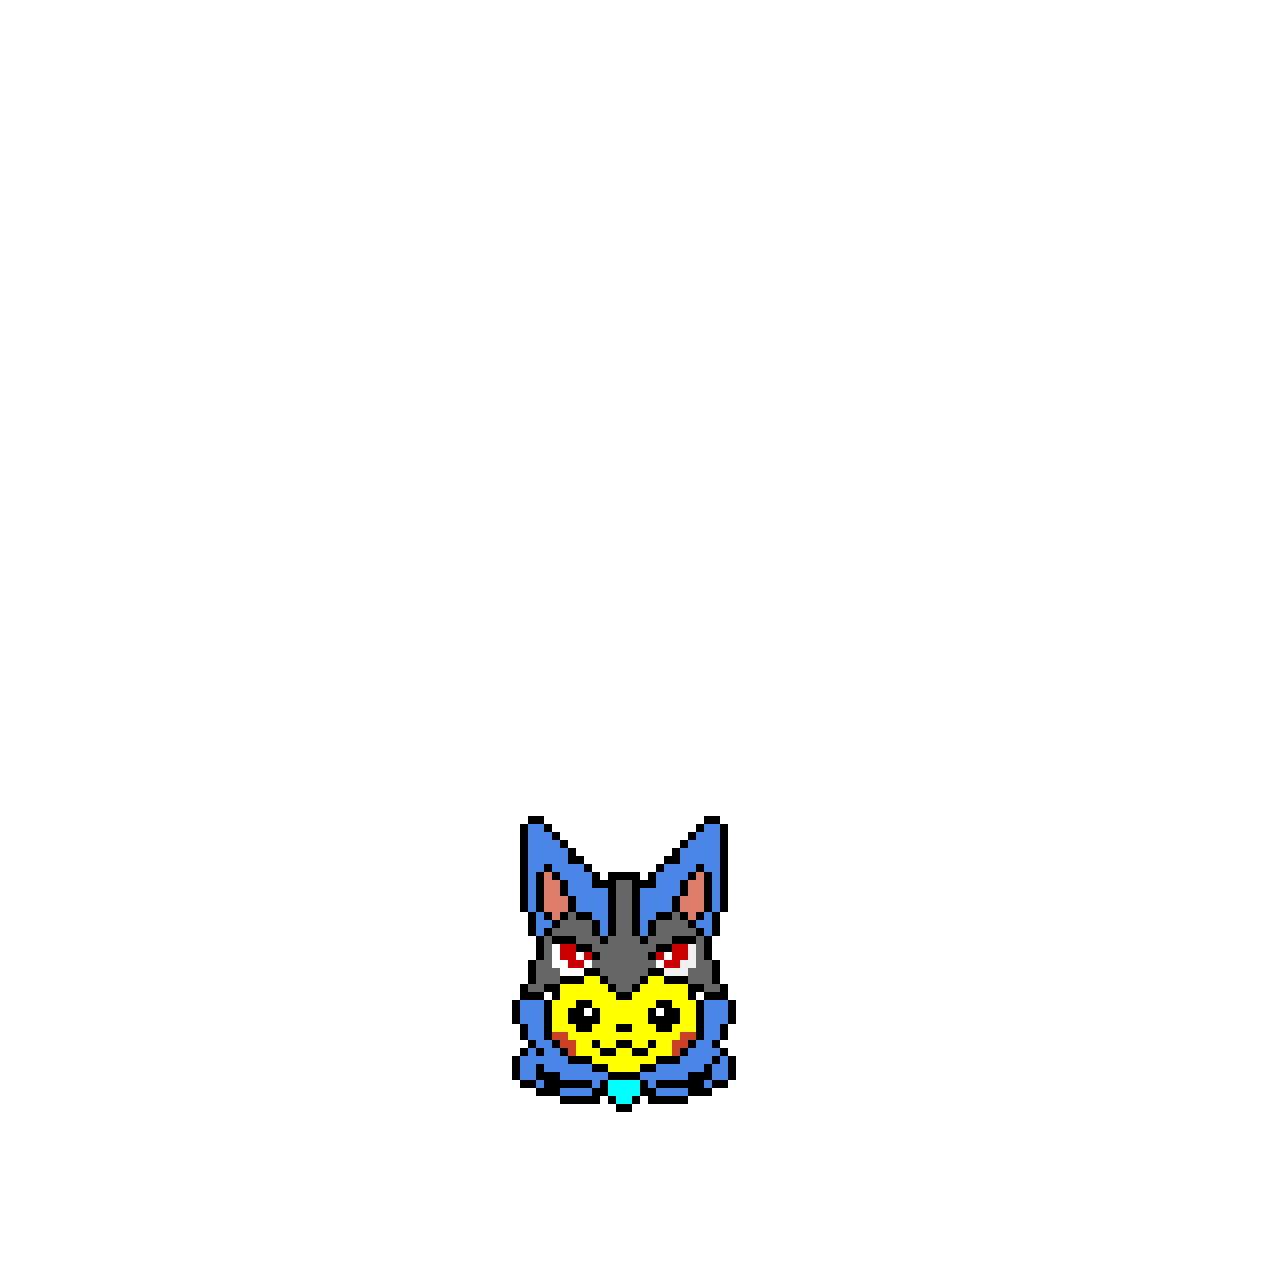 Pikachu wearing Lucario’s skin